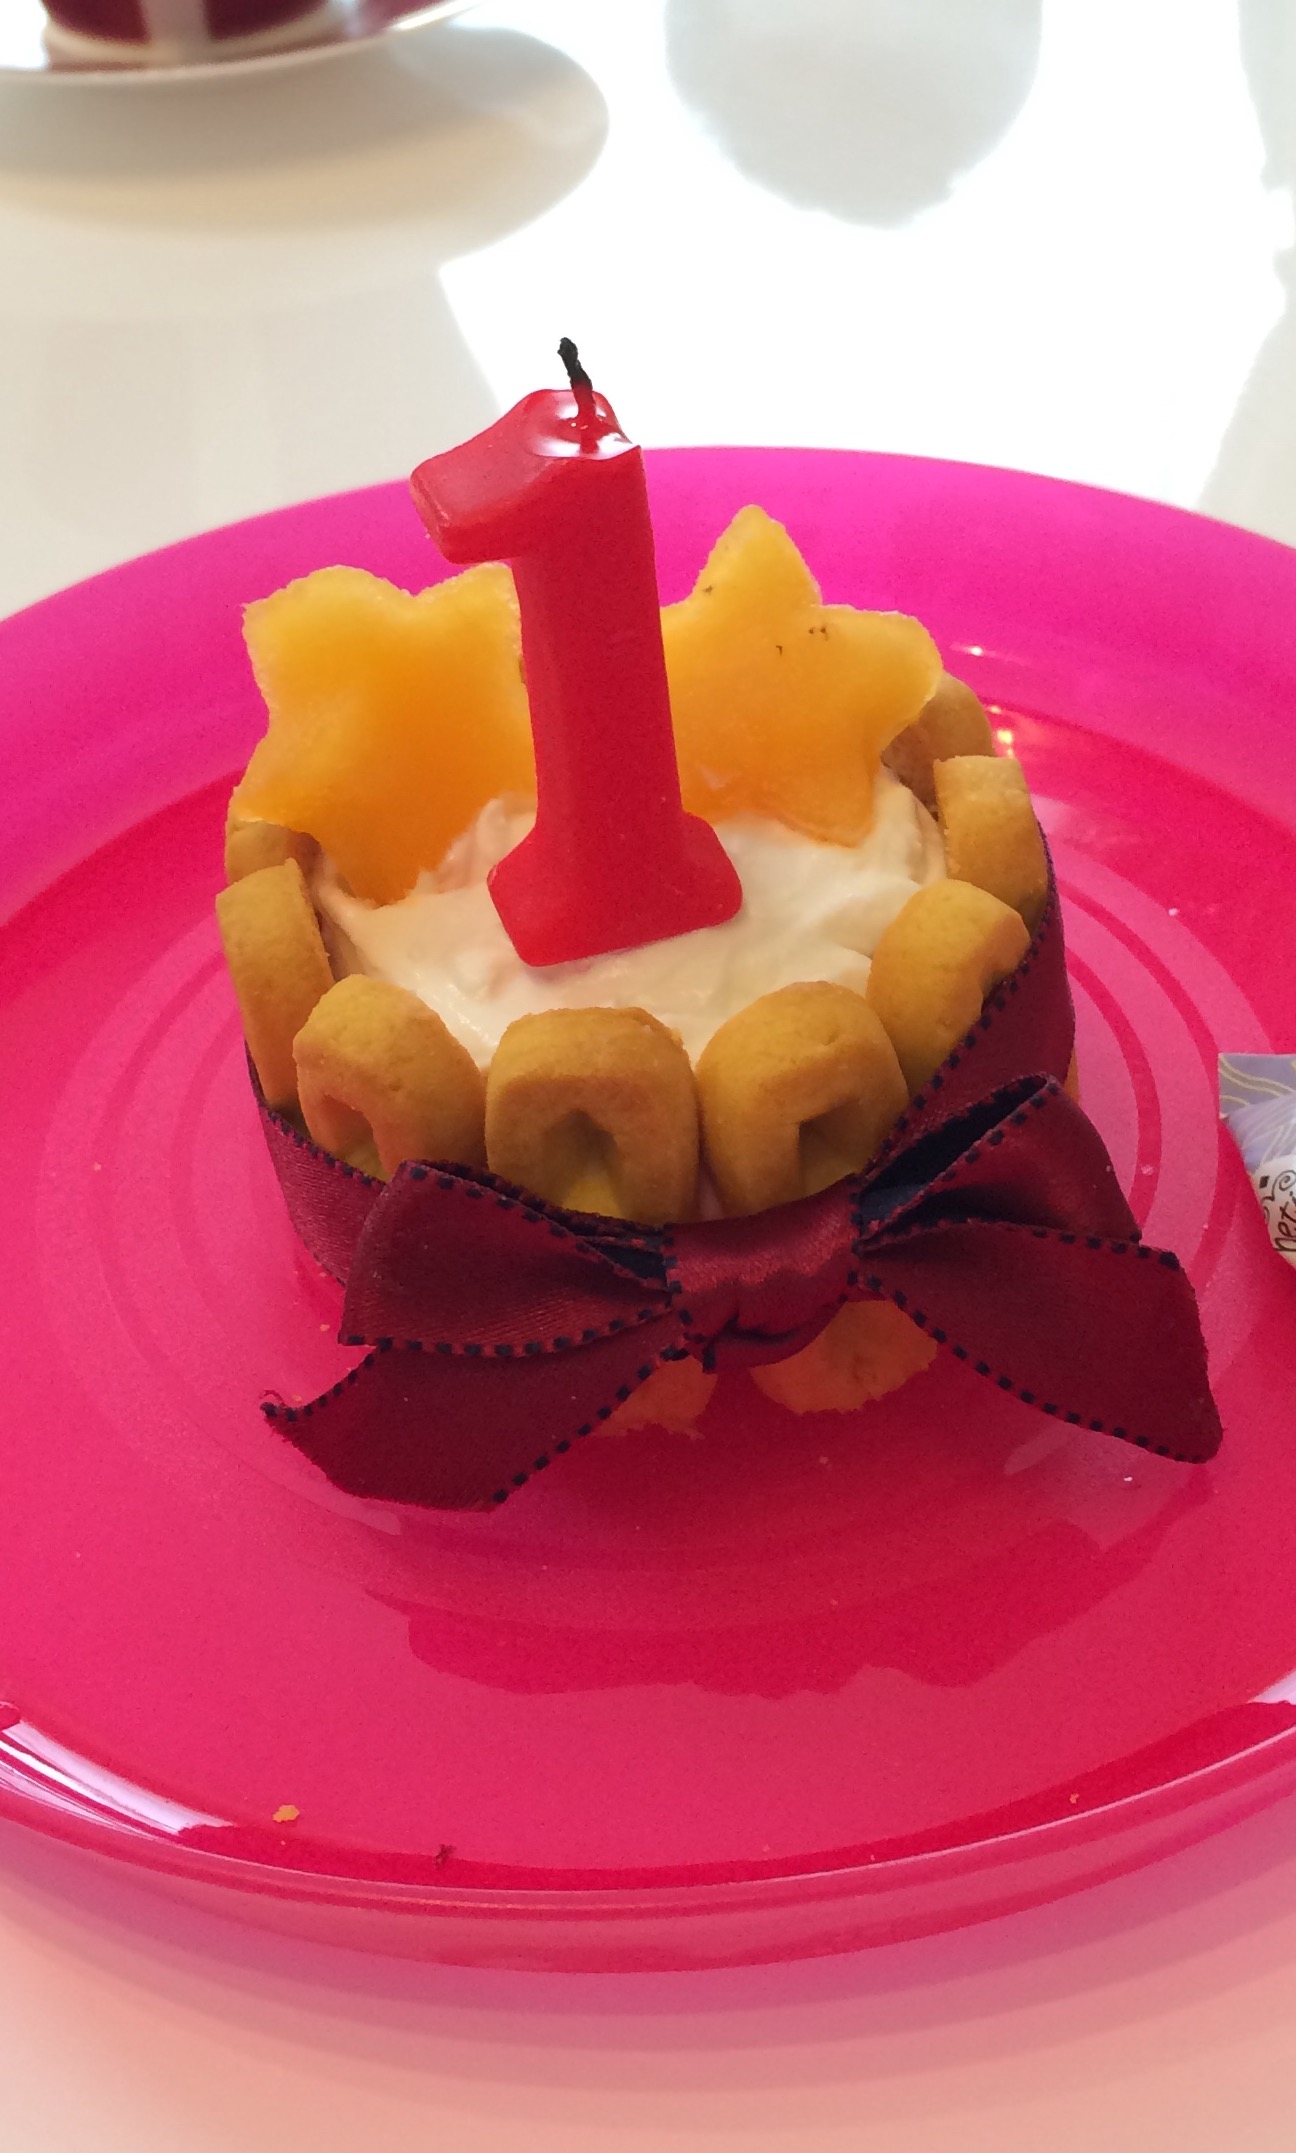 １歳の誕生日ケーキは手作りでかわいくデコレーション 大人用は 暮らしのトリセツ